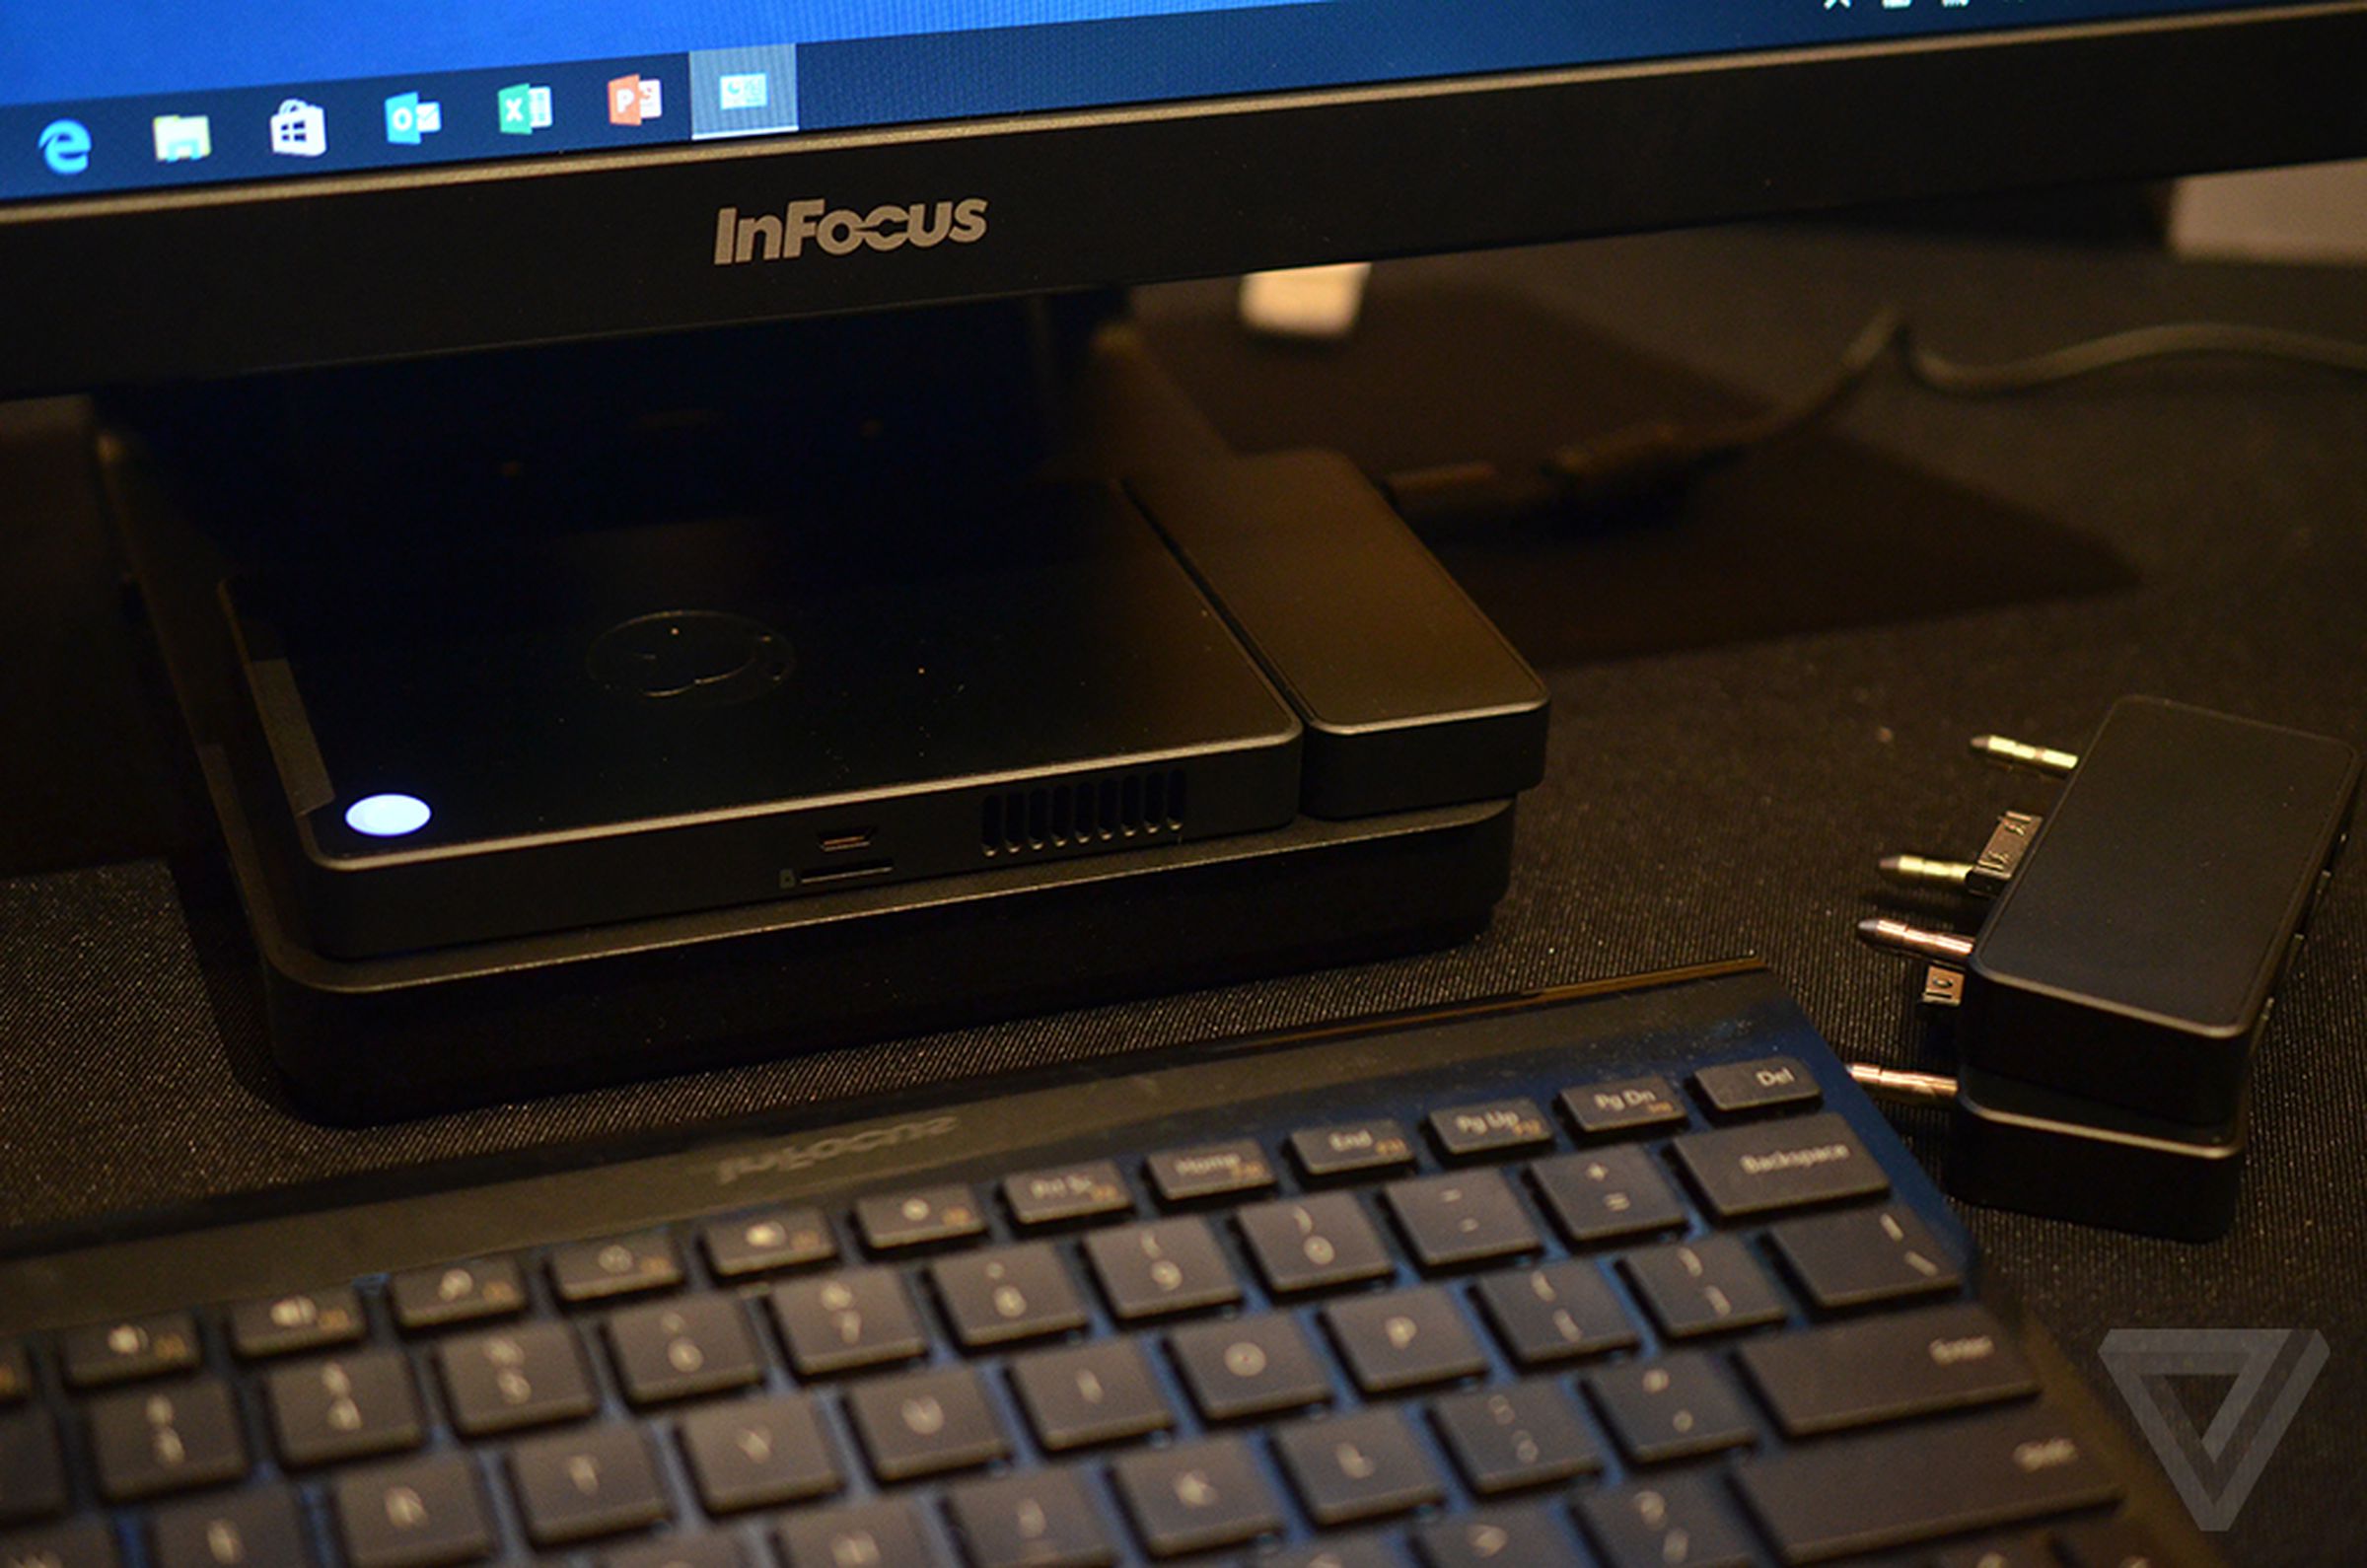 InFocus Kangaroo Windows 10 PC hands-on photos